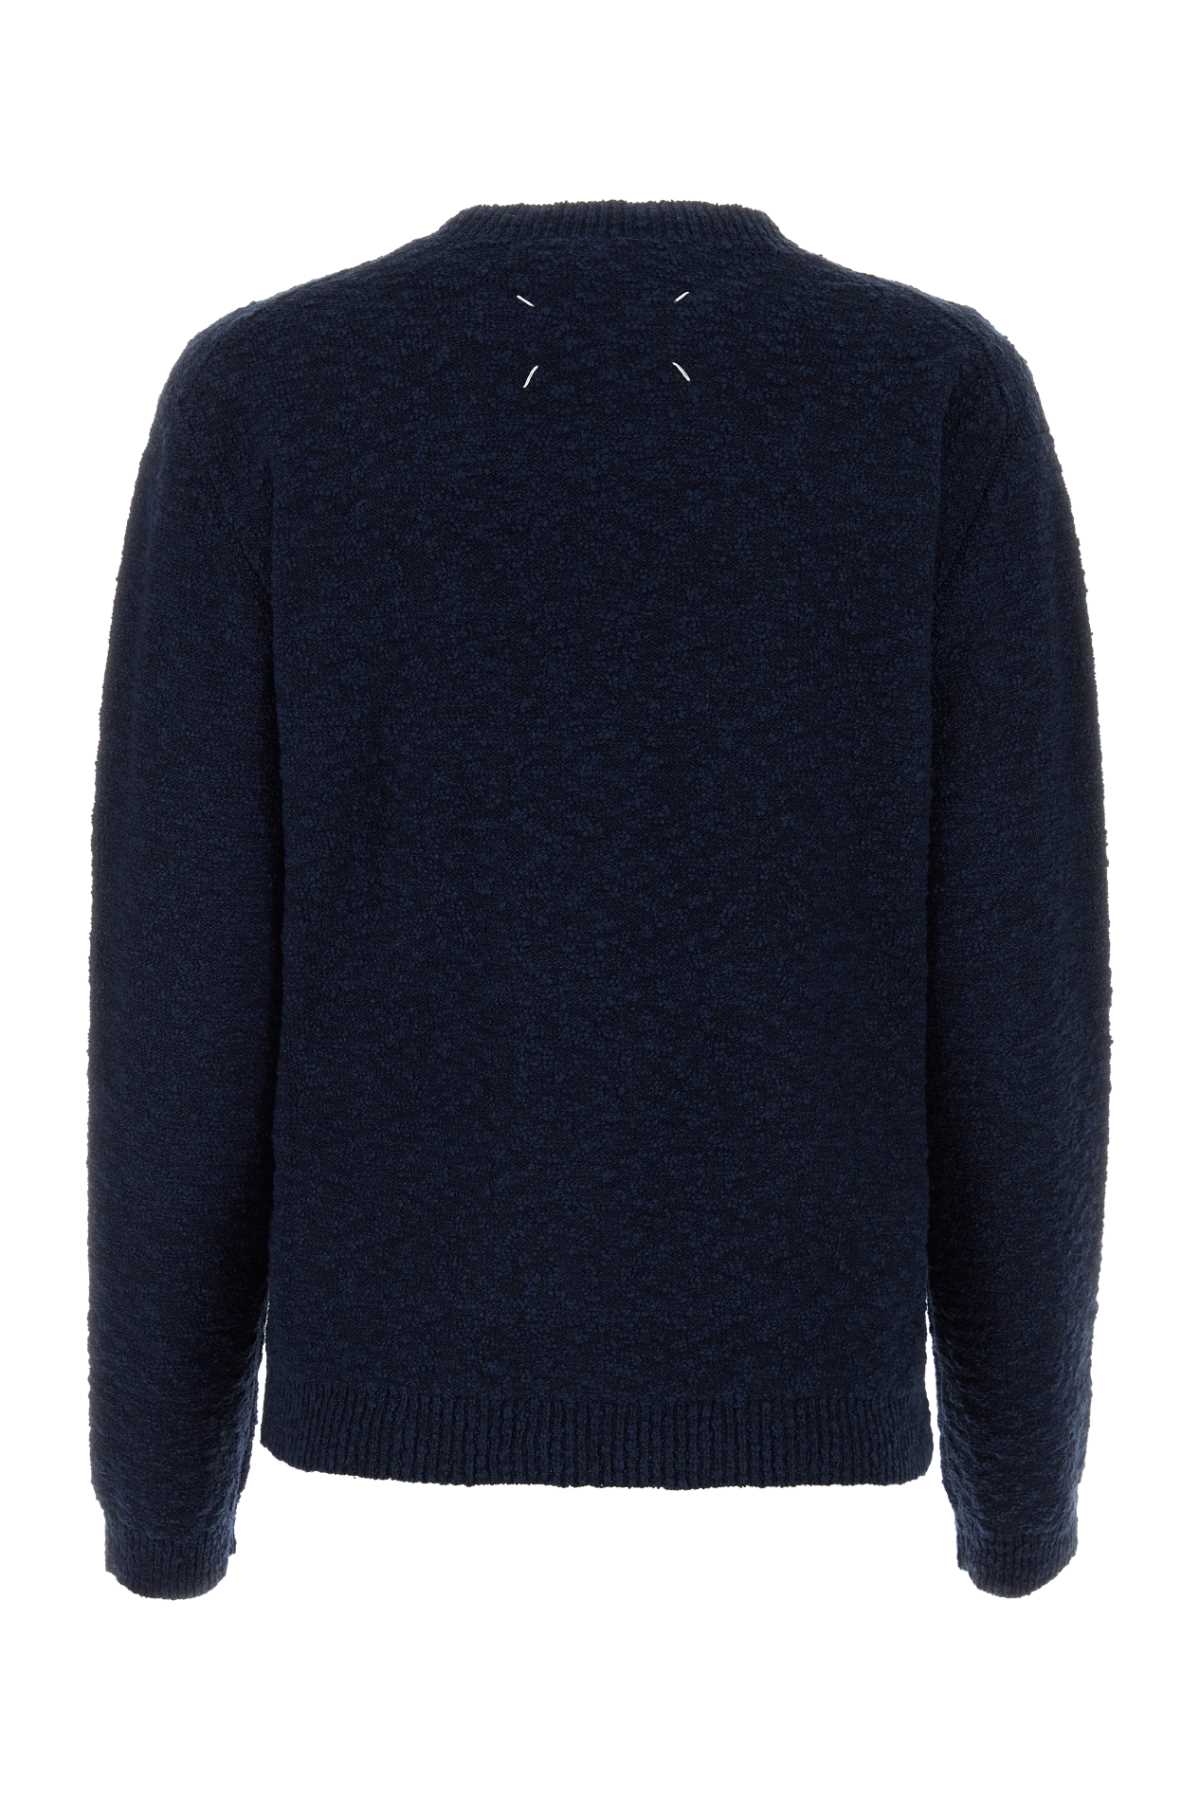 Maison Margiela Dark Blue Cotton Blend Sweater In 511